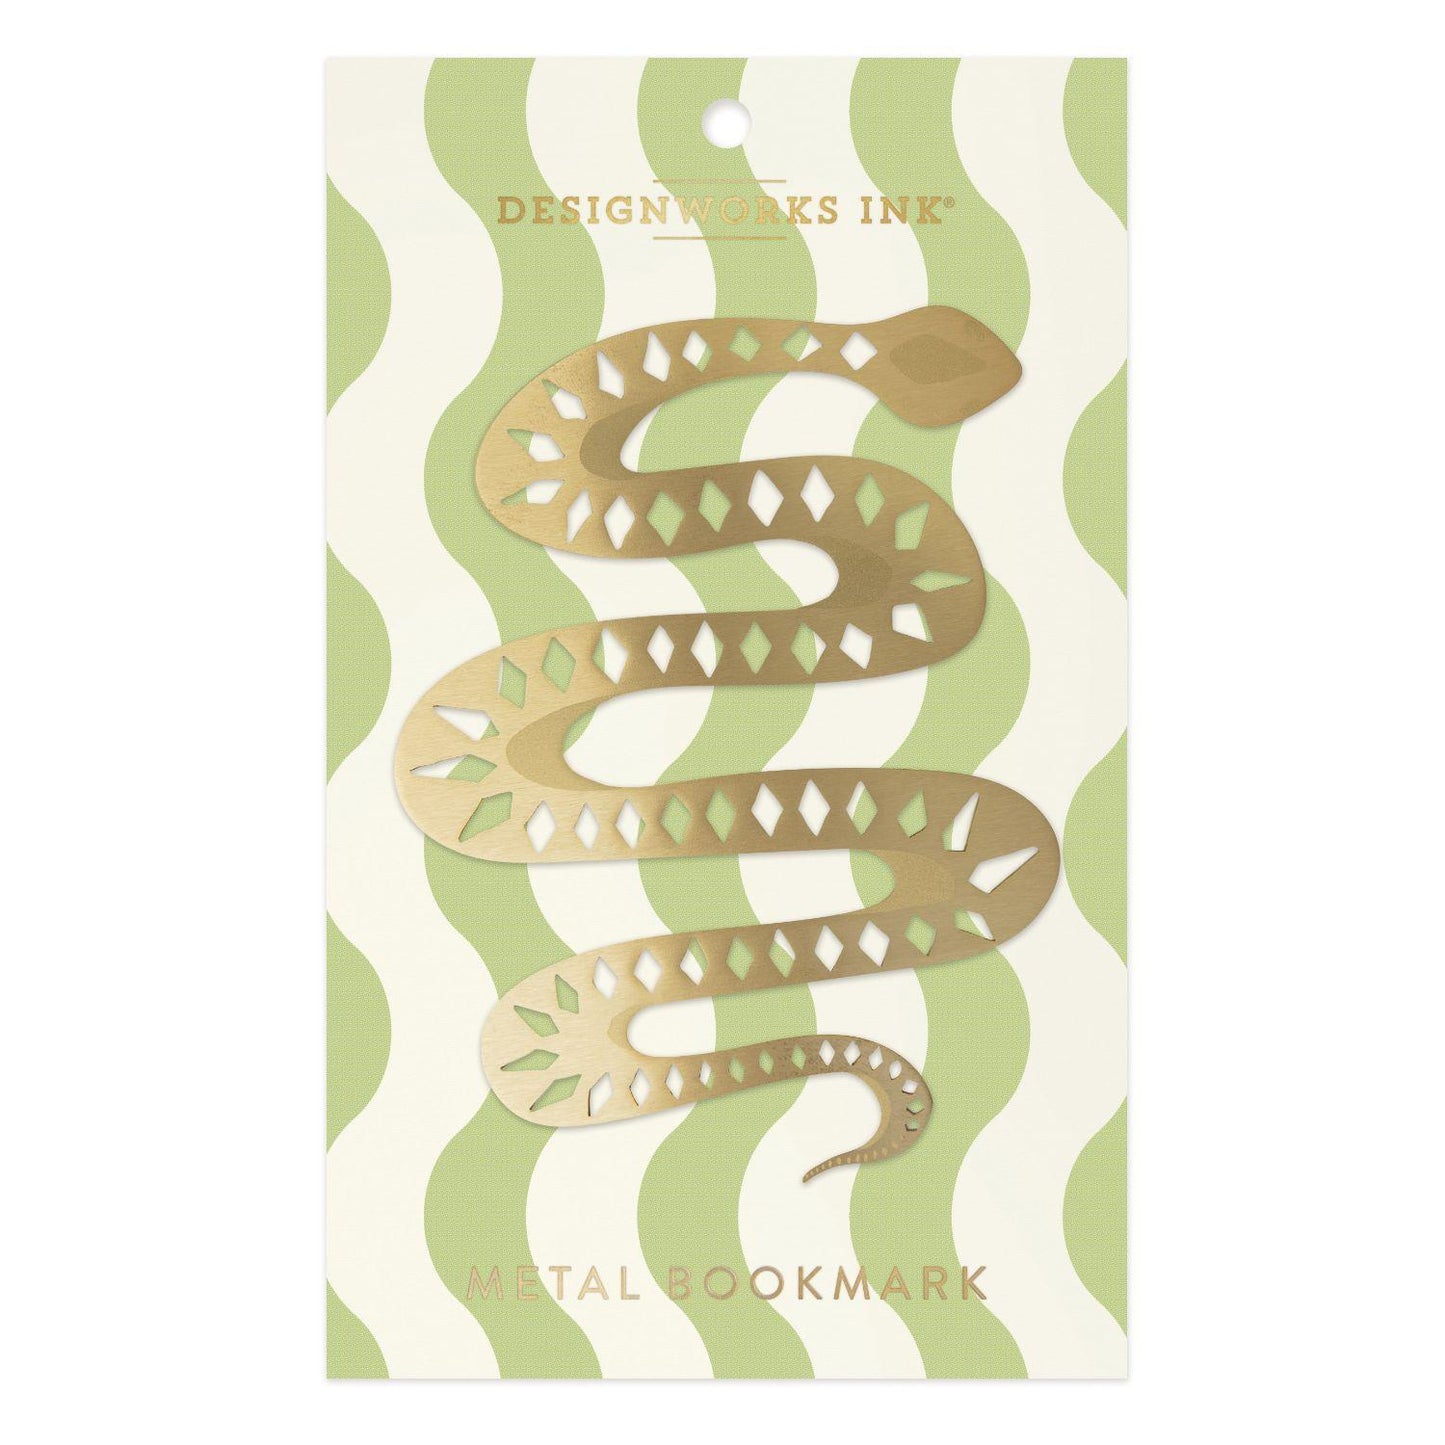 Snake Design Metal Bookmark by Designworks Ink